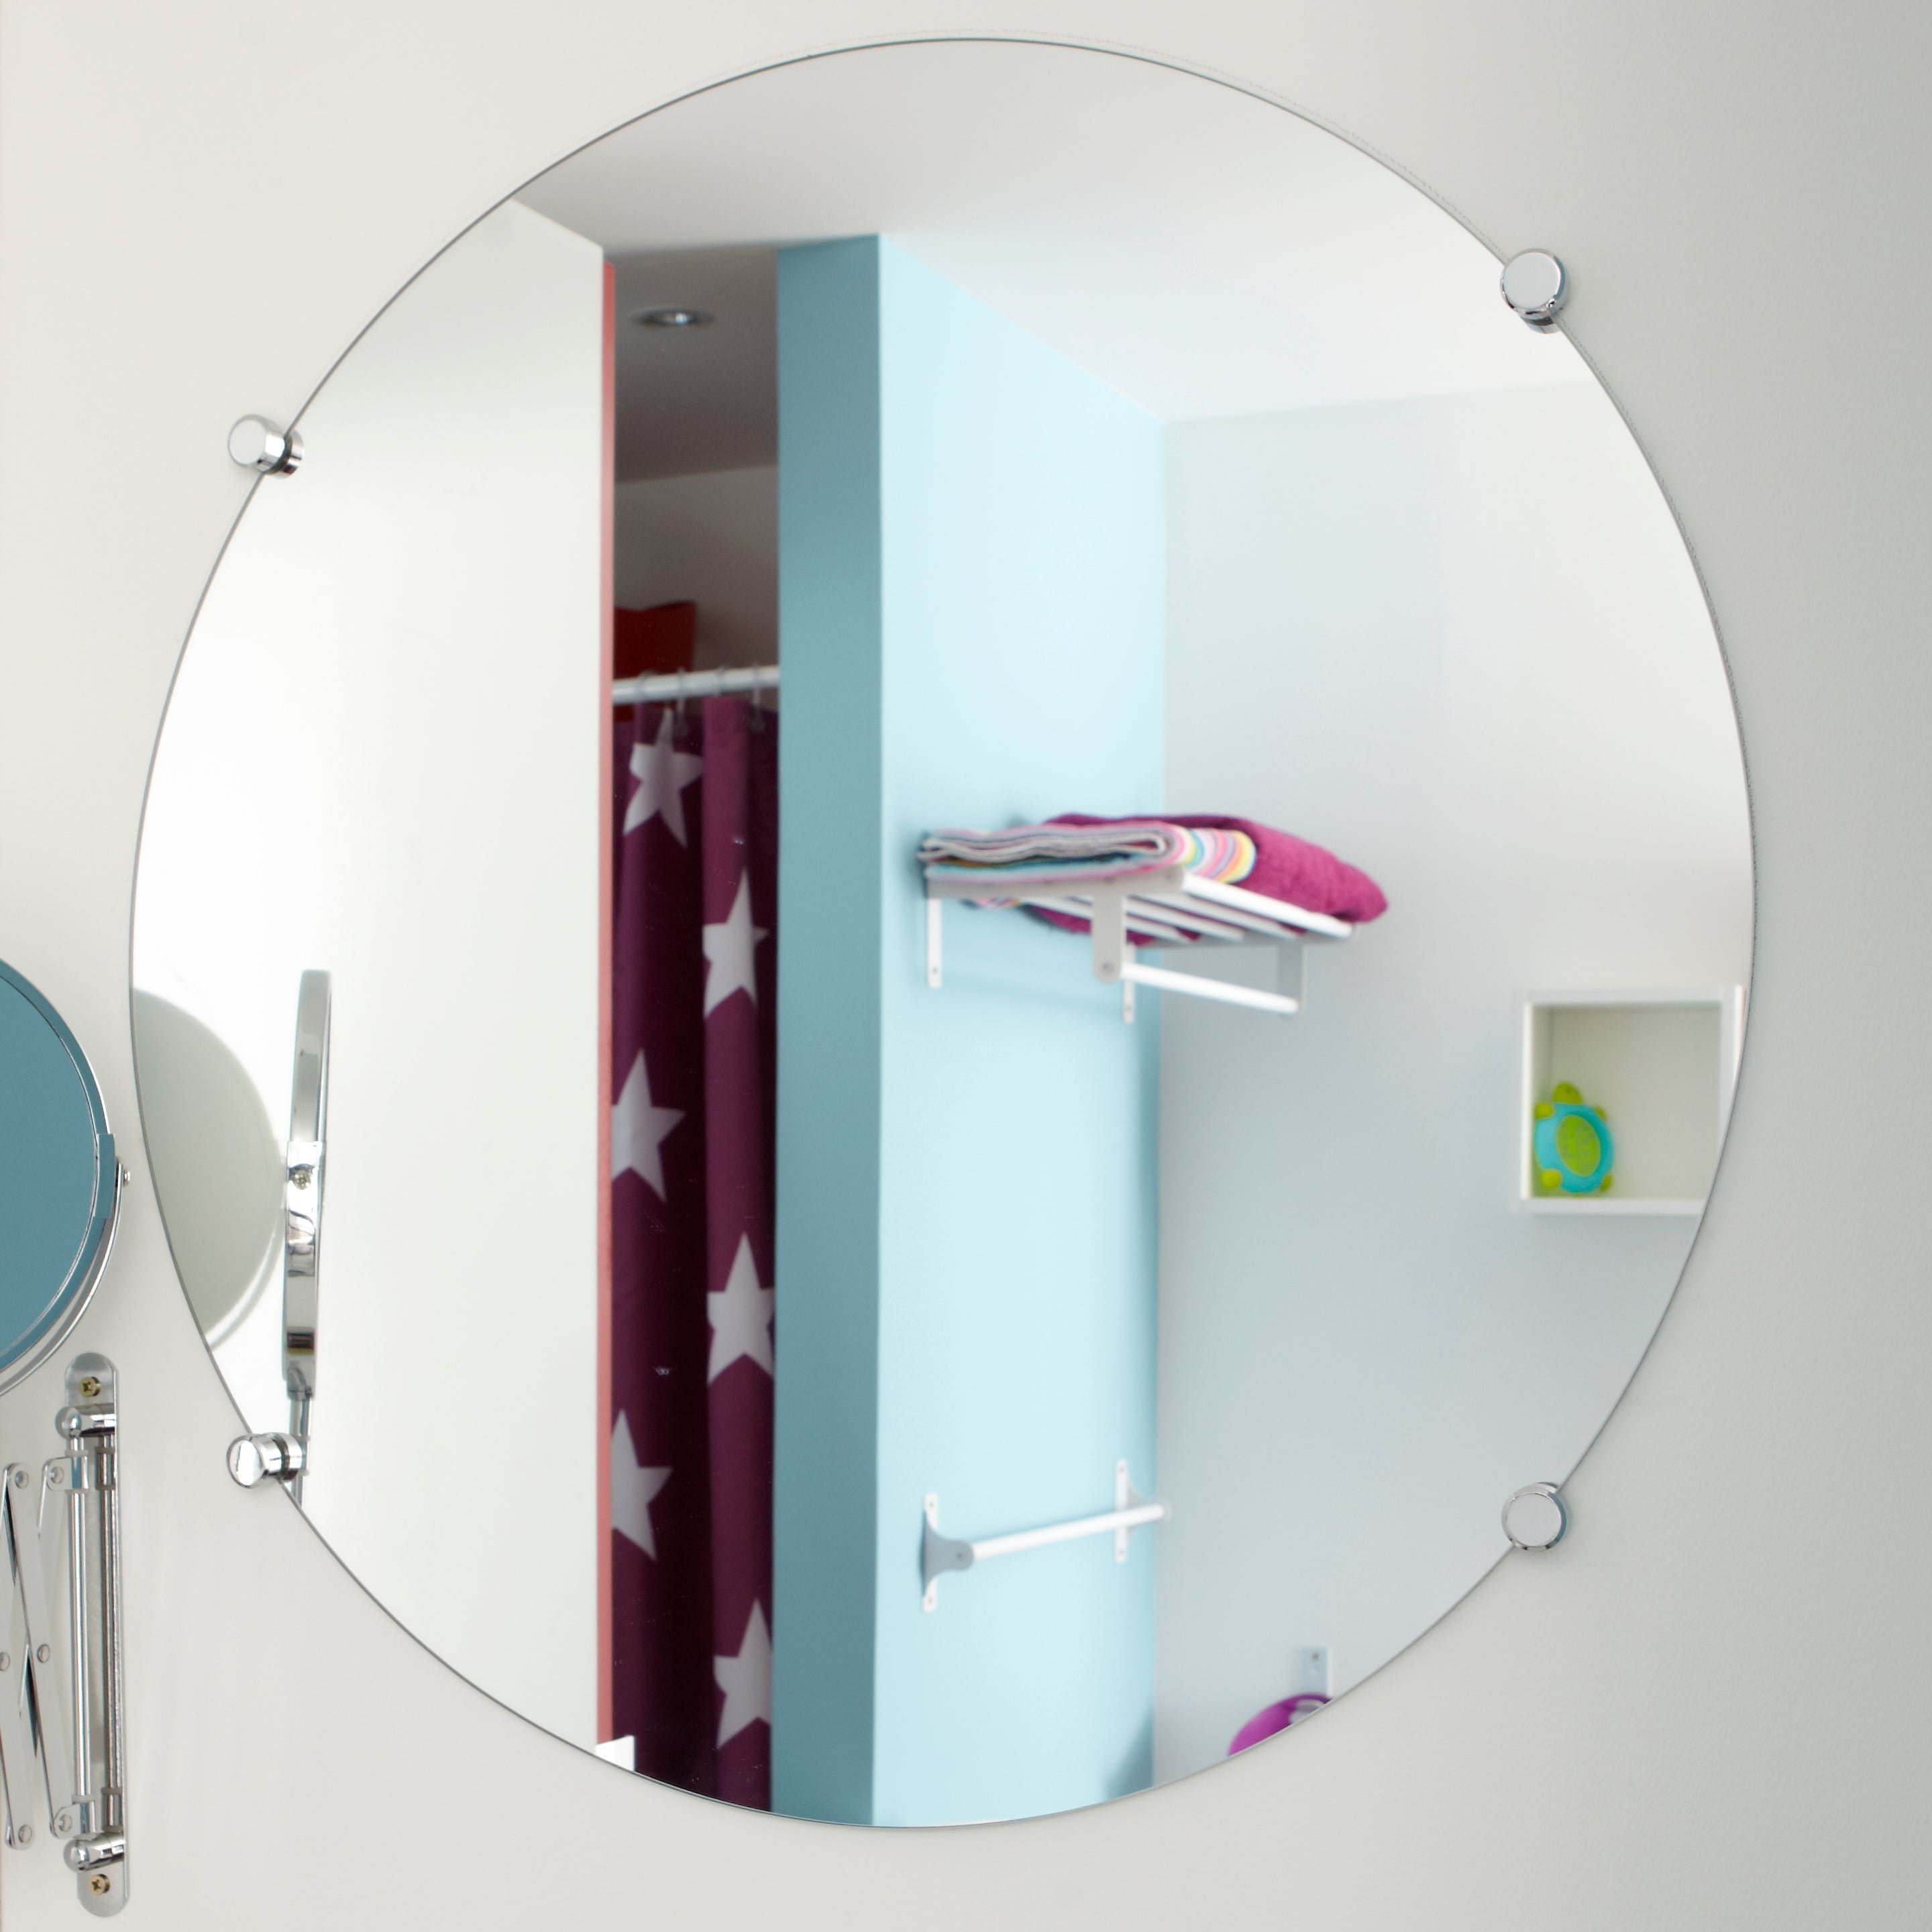 Леруа мерлен зеркало с подсветкой в ванную. Круглое зеркало со шкафчиком. Зеркальный шкаф круглый. Круглое зеркало шкаф в ванную. Круглое зеркало и шкаф в ванную комплект.